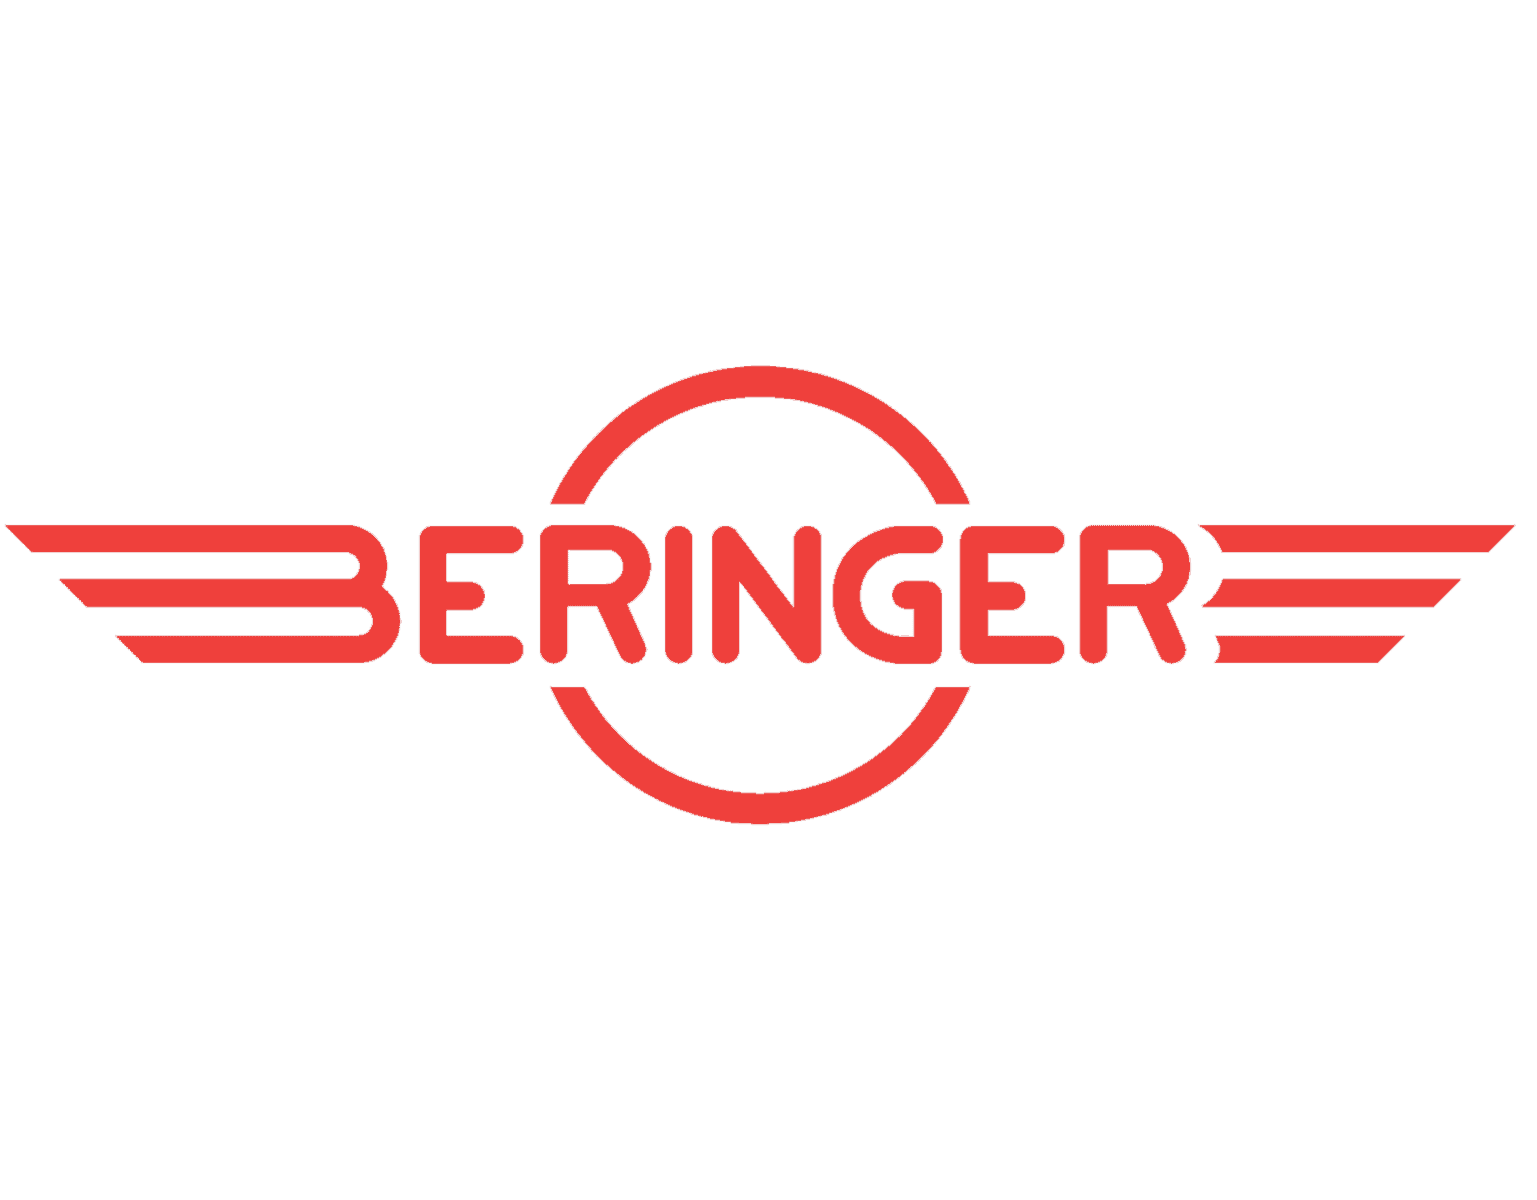 beringer